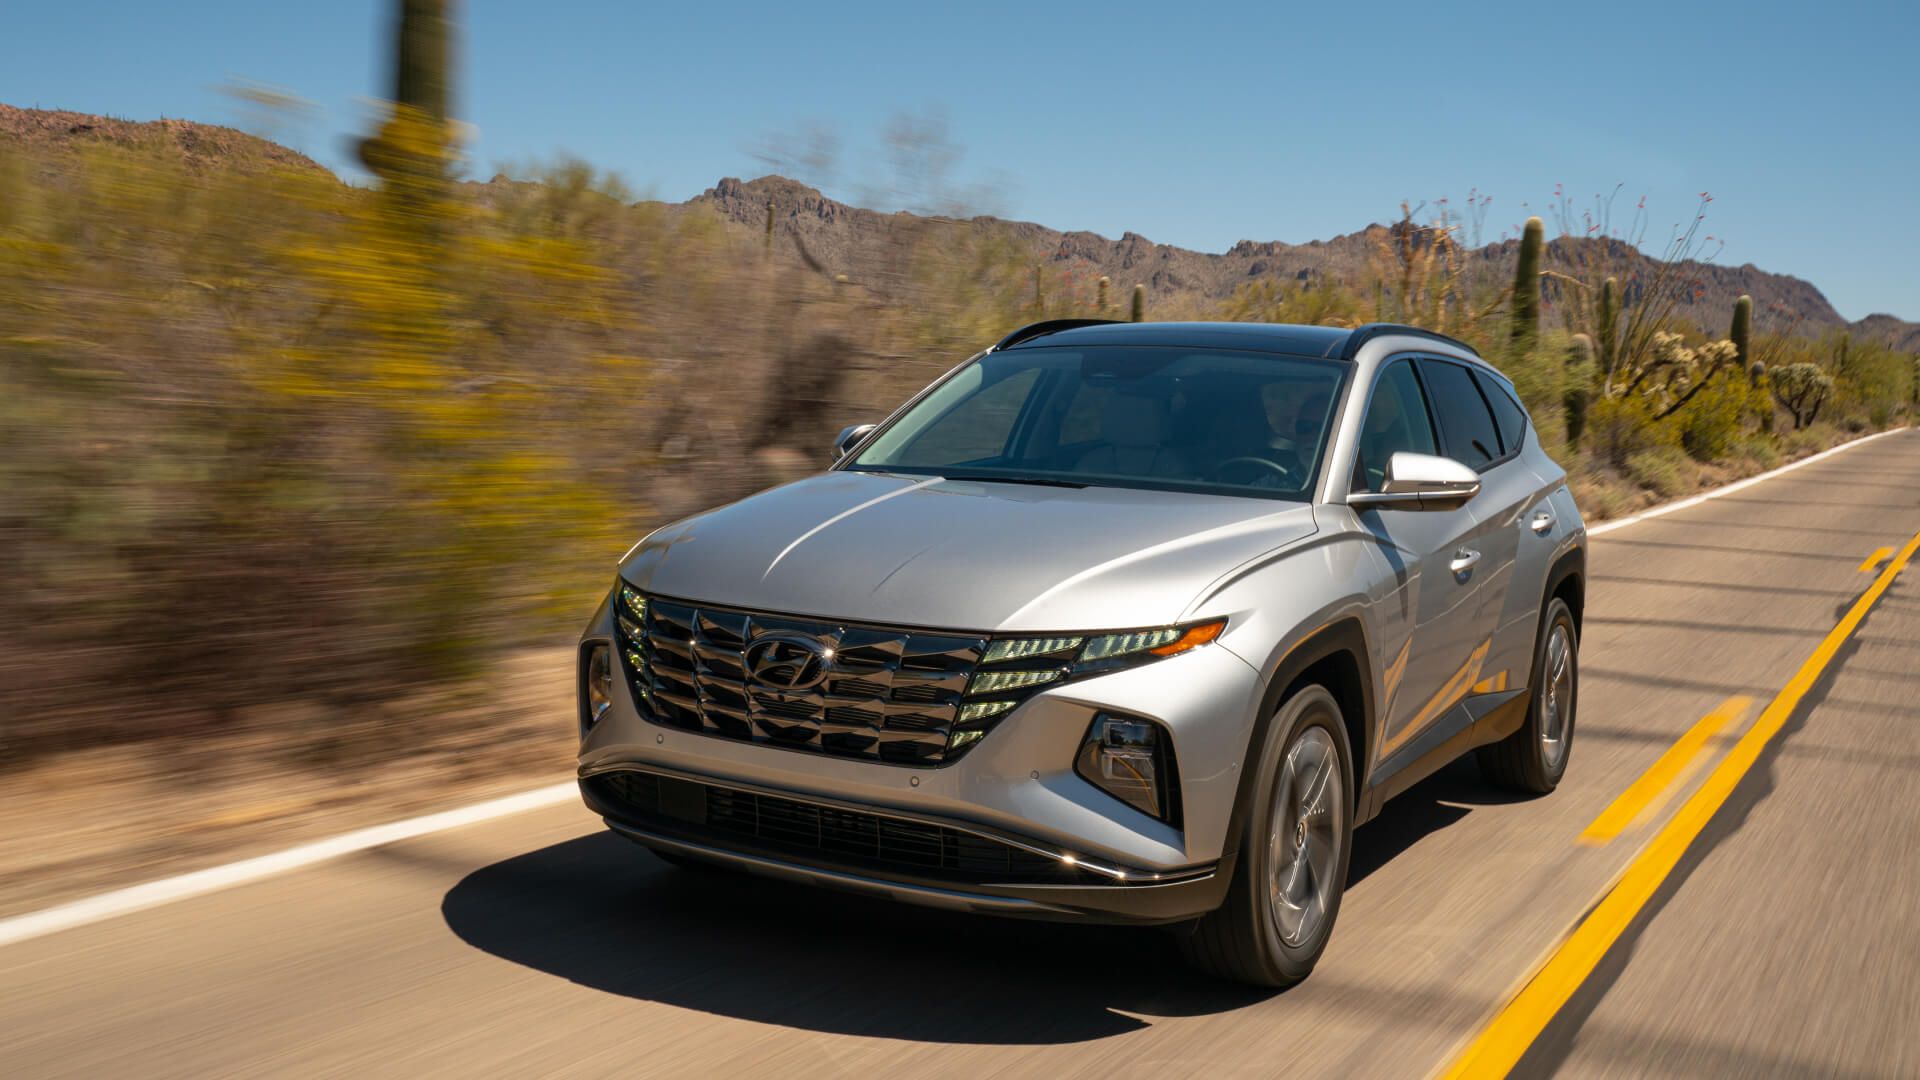 2022 Hyundai Tucson: Design, Interior, Engines, Photos